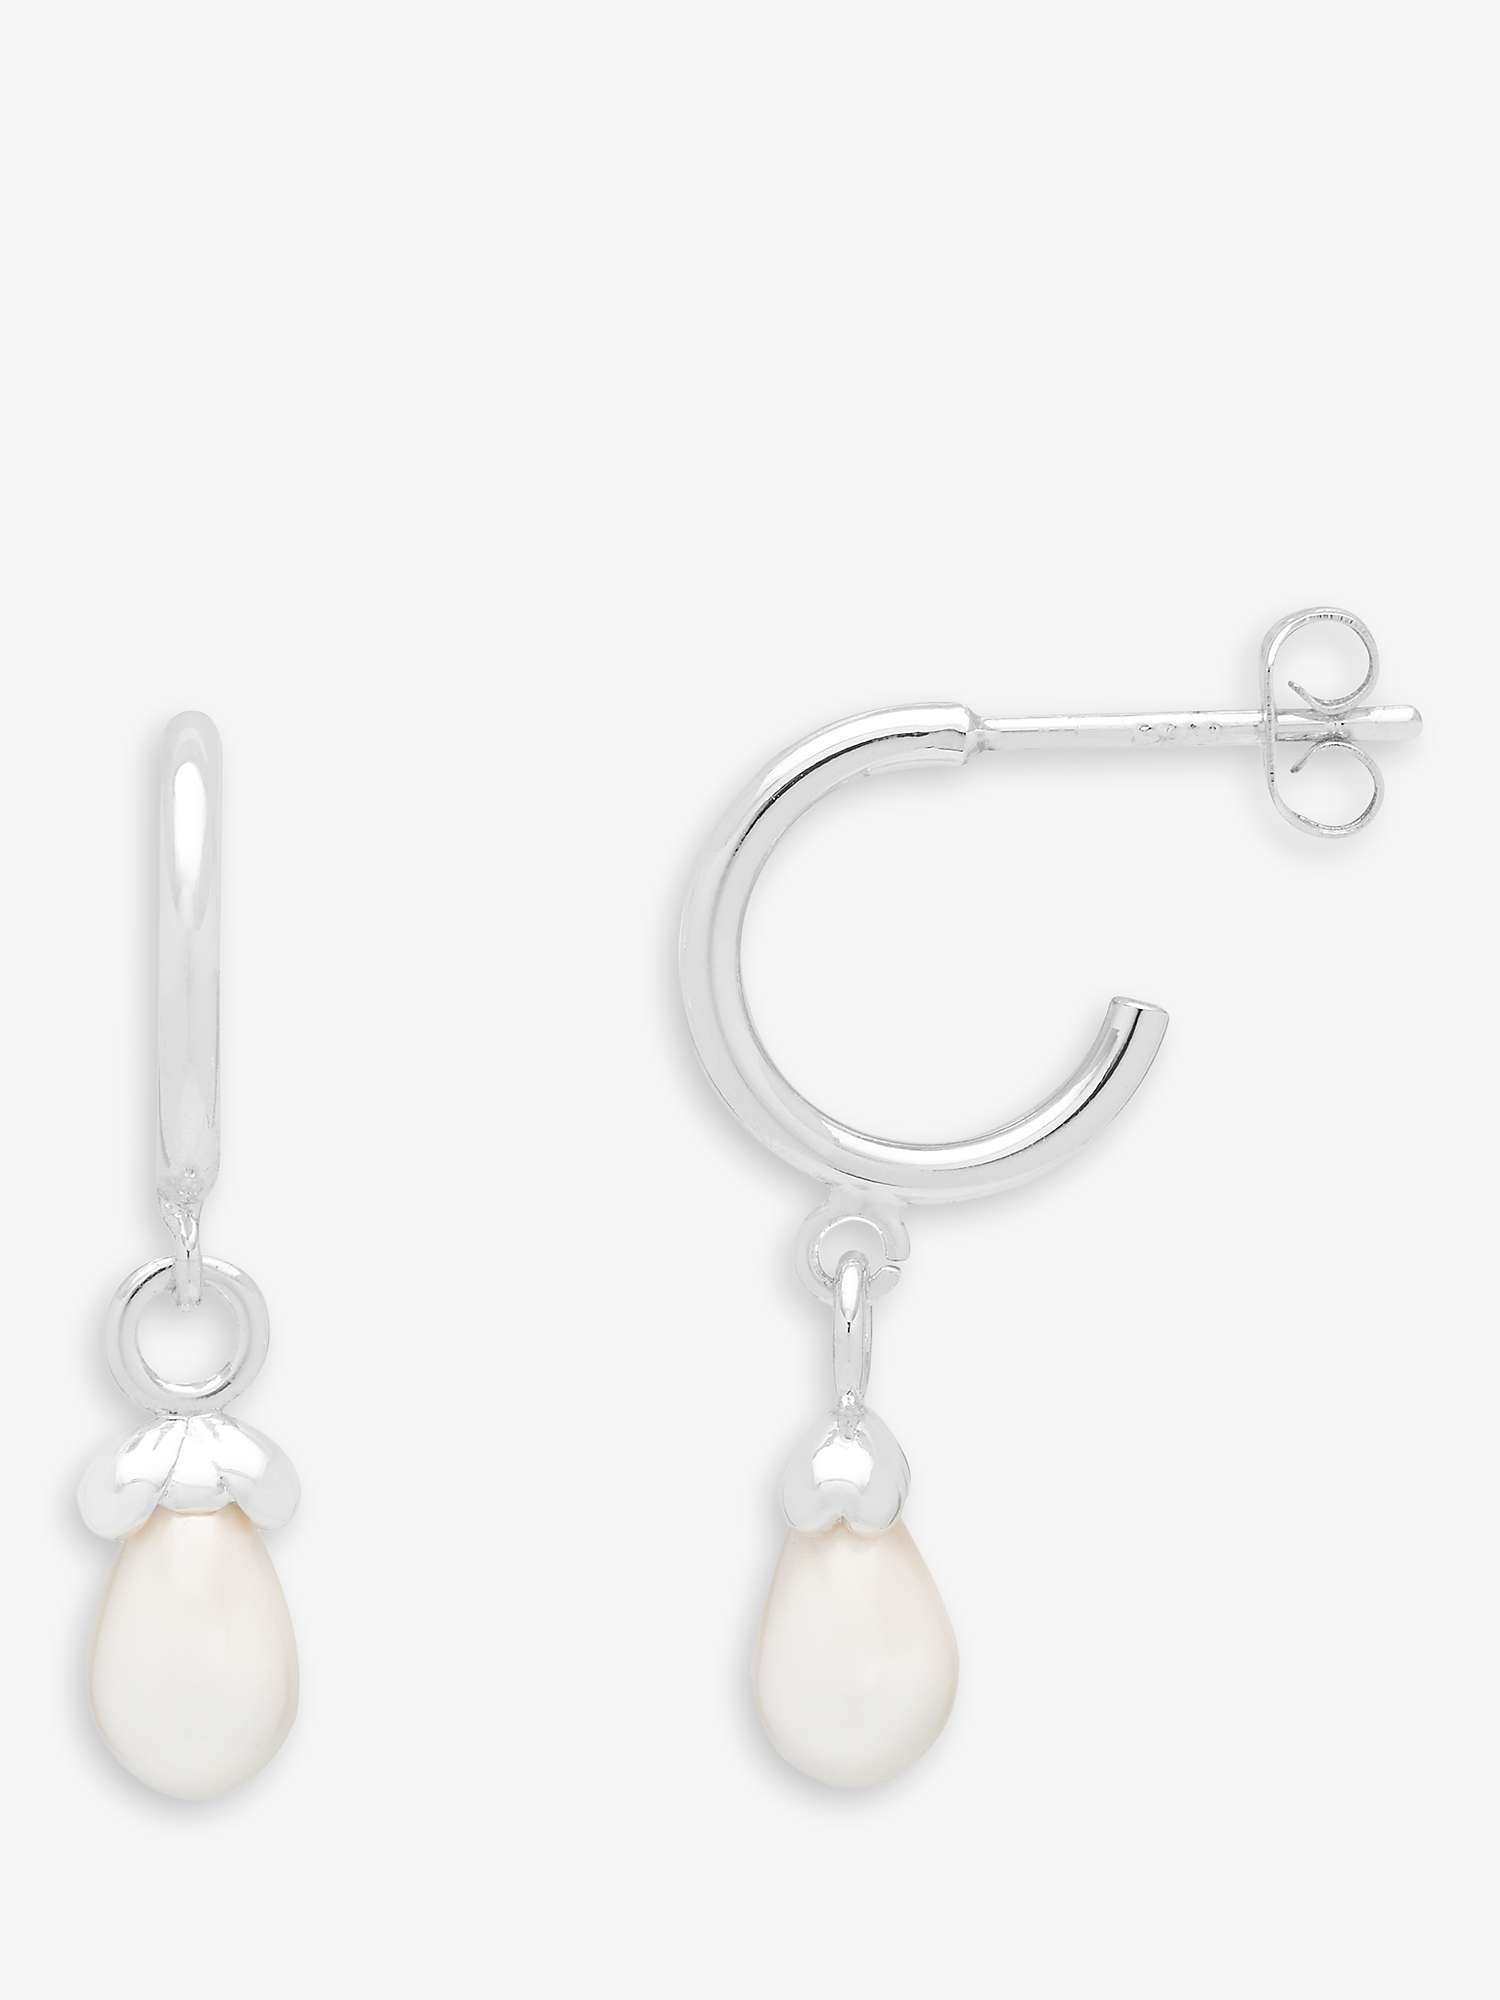 Buy Estella Bartlett 'Wonderful Mum' Pearl Drop Hoop Earrings, Silver Online at johnlewis.com